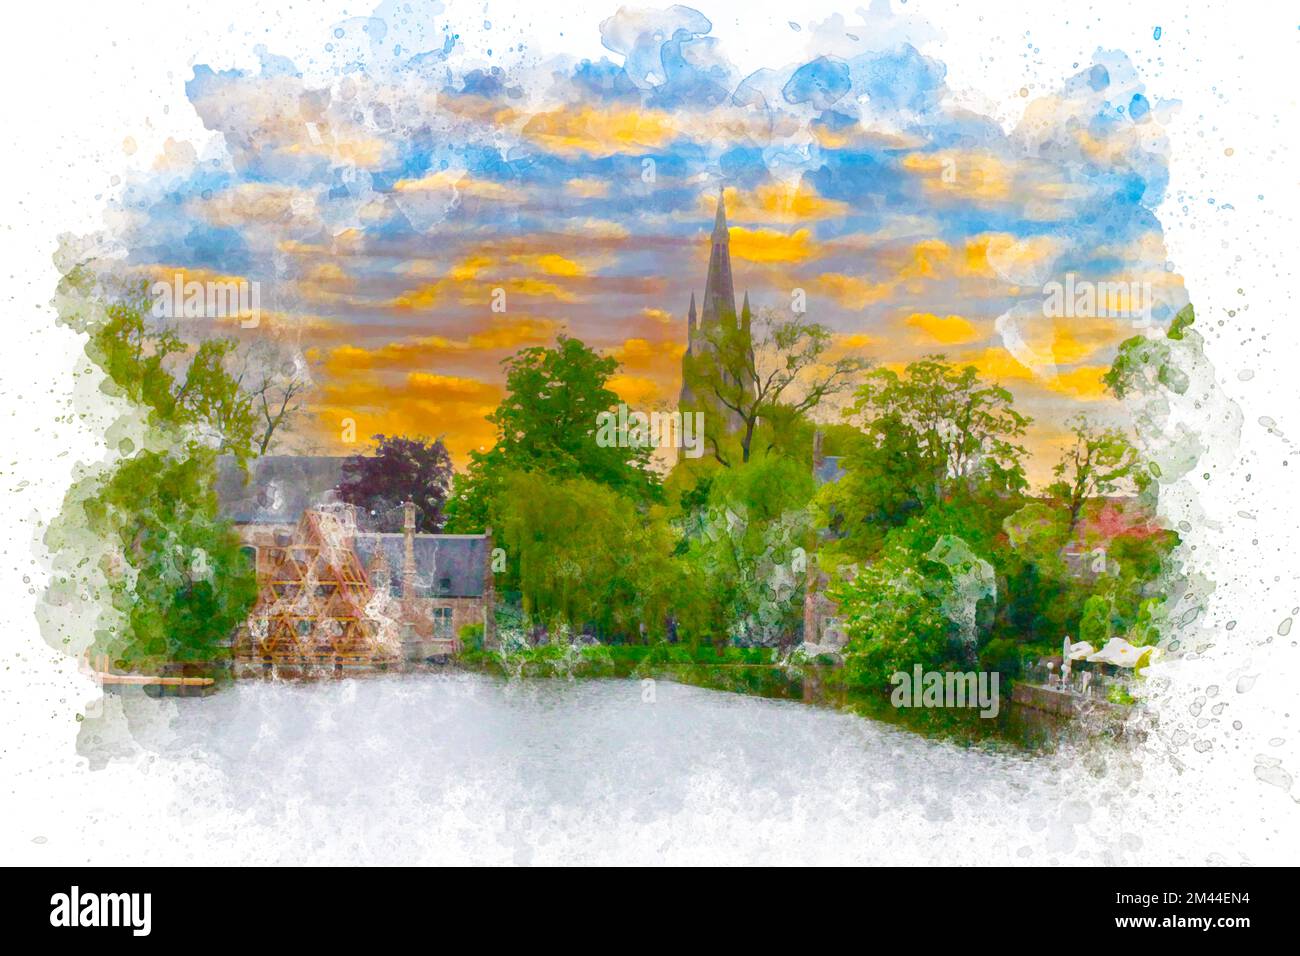 Aquarellgemälde der Stadtlandschaft von Brügge. Reisen Sie nach Brügge Belgien Konzept. Blick auf Brügge bei Sonnenuntergang. Aquarellmalerei Stockfoto